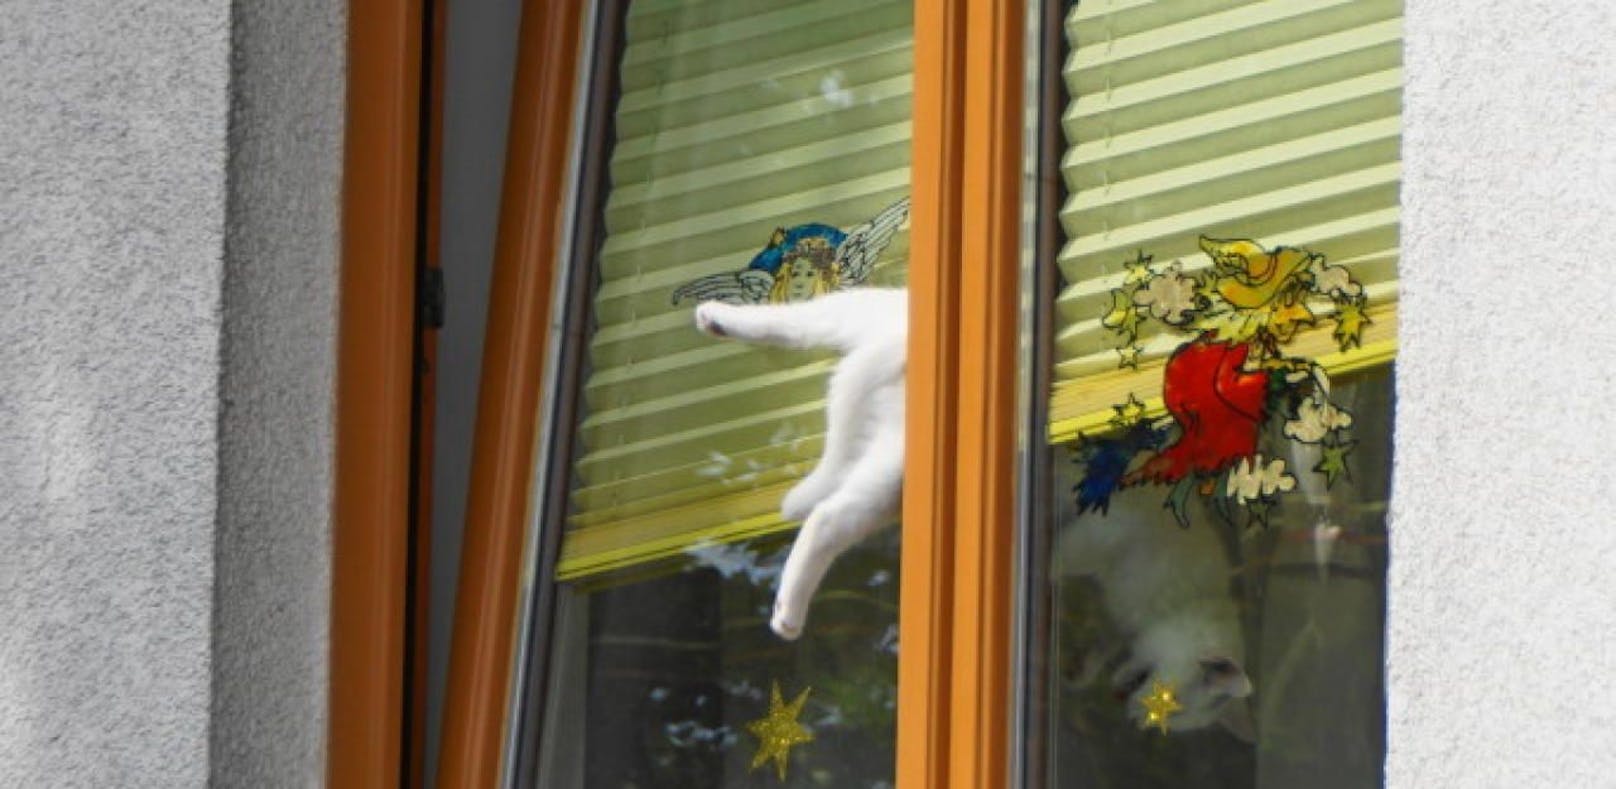 Katze rutscht ab, steckt in gekipptem Fenster fest